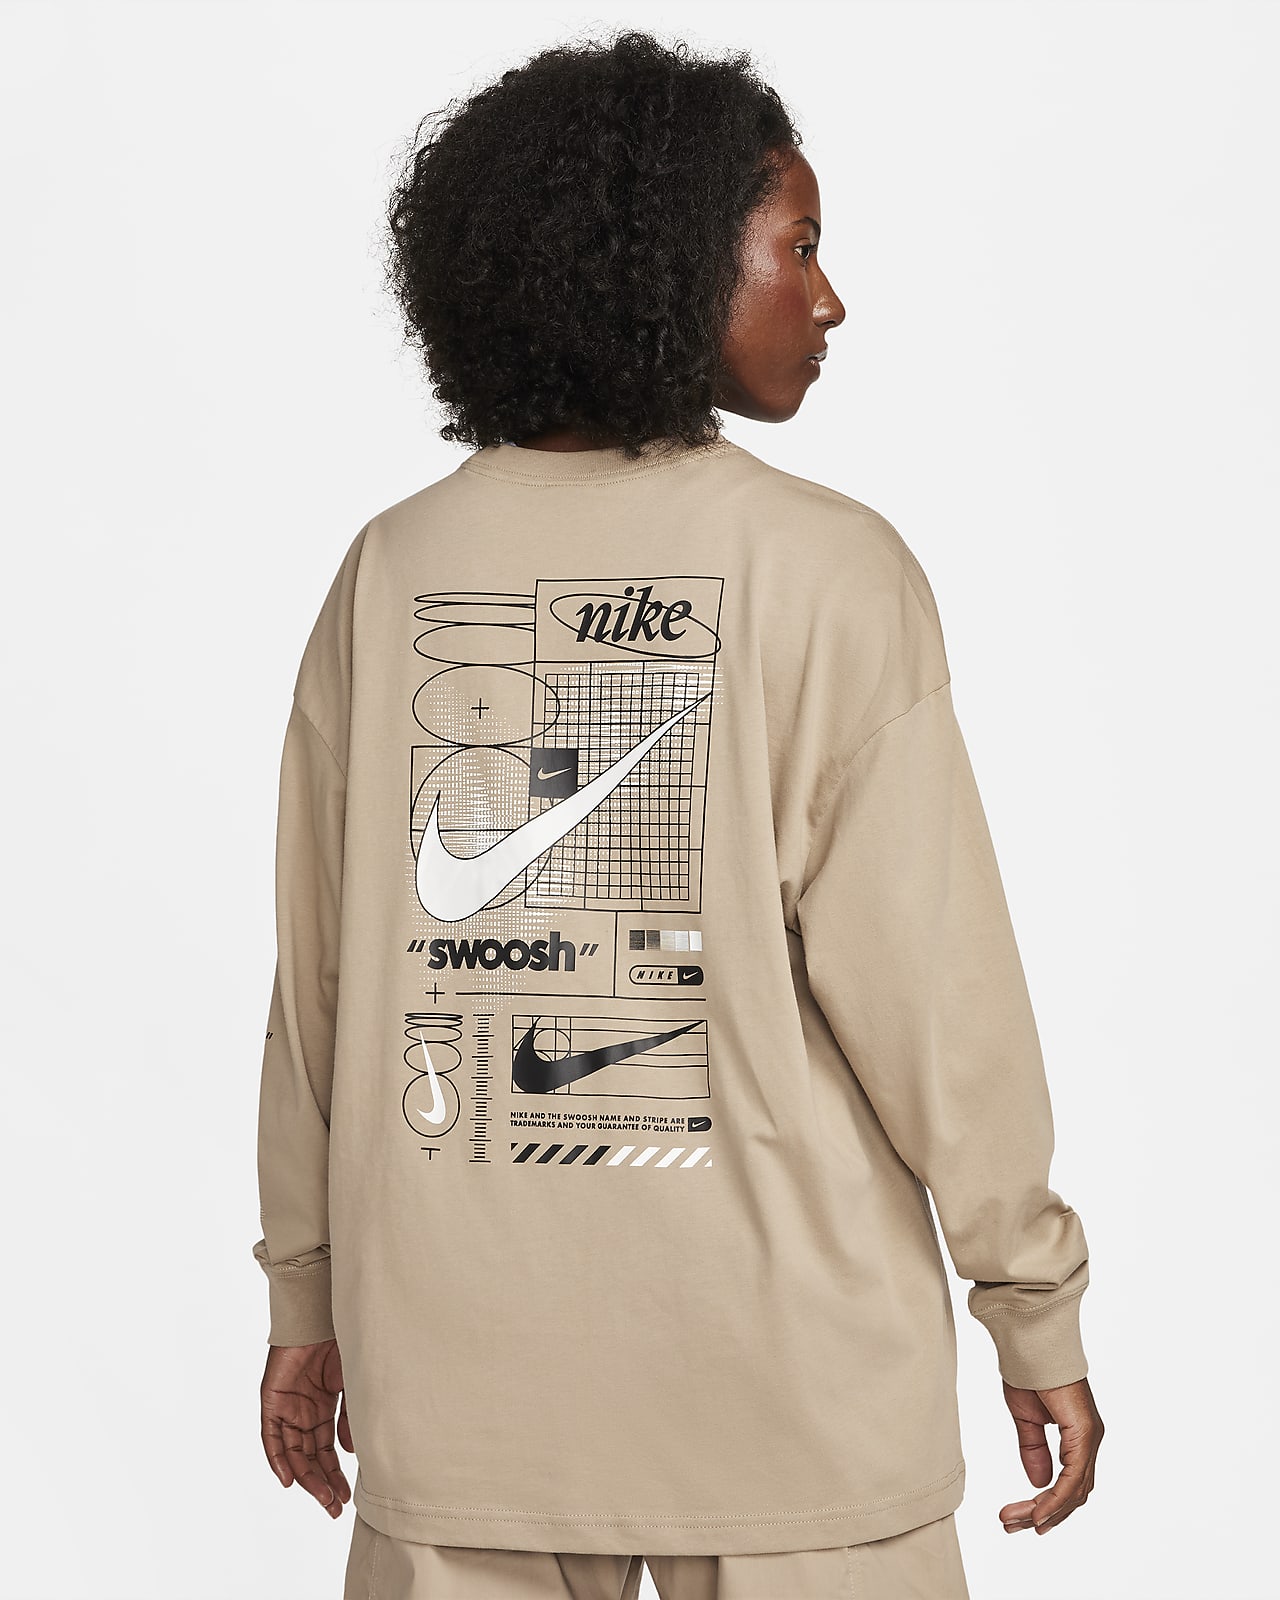 Nike Sportswear Women's Long-Sleeve Top. Nike LU